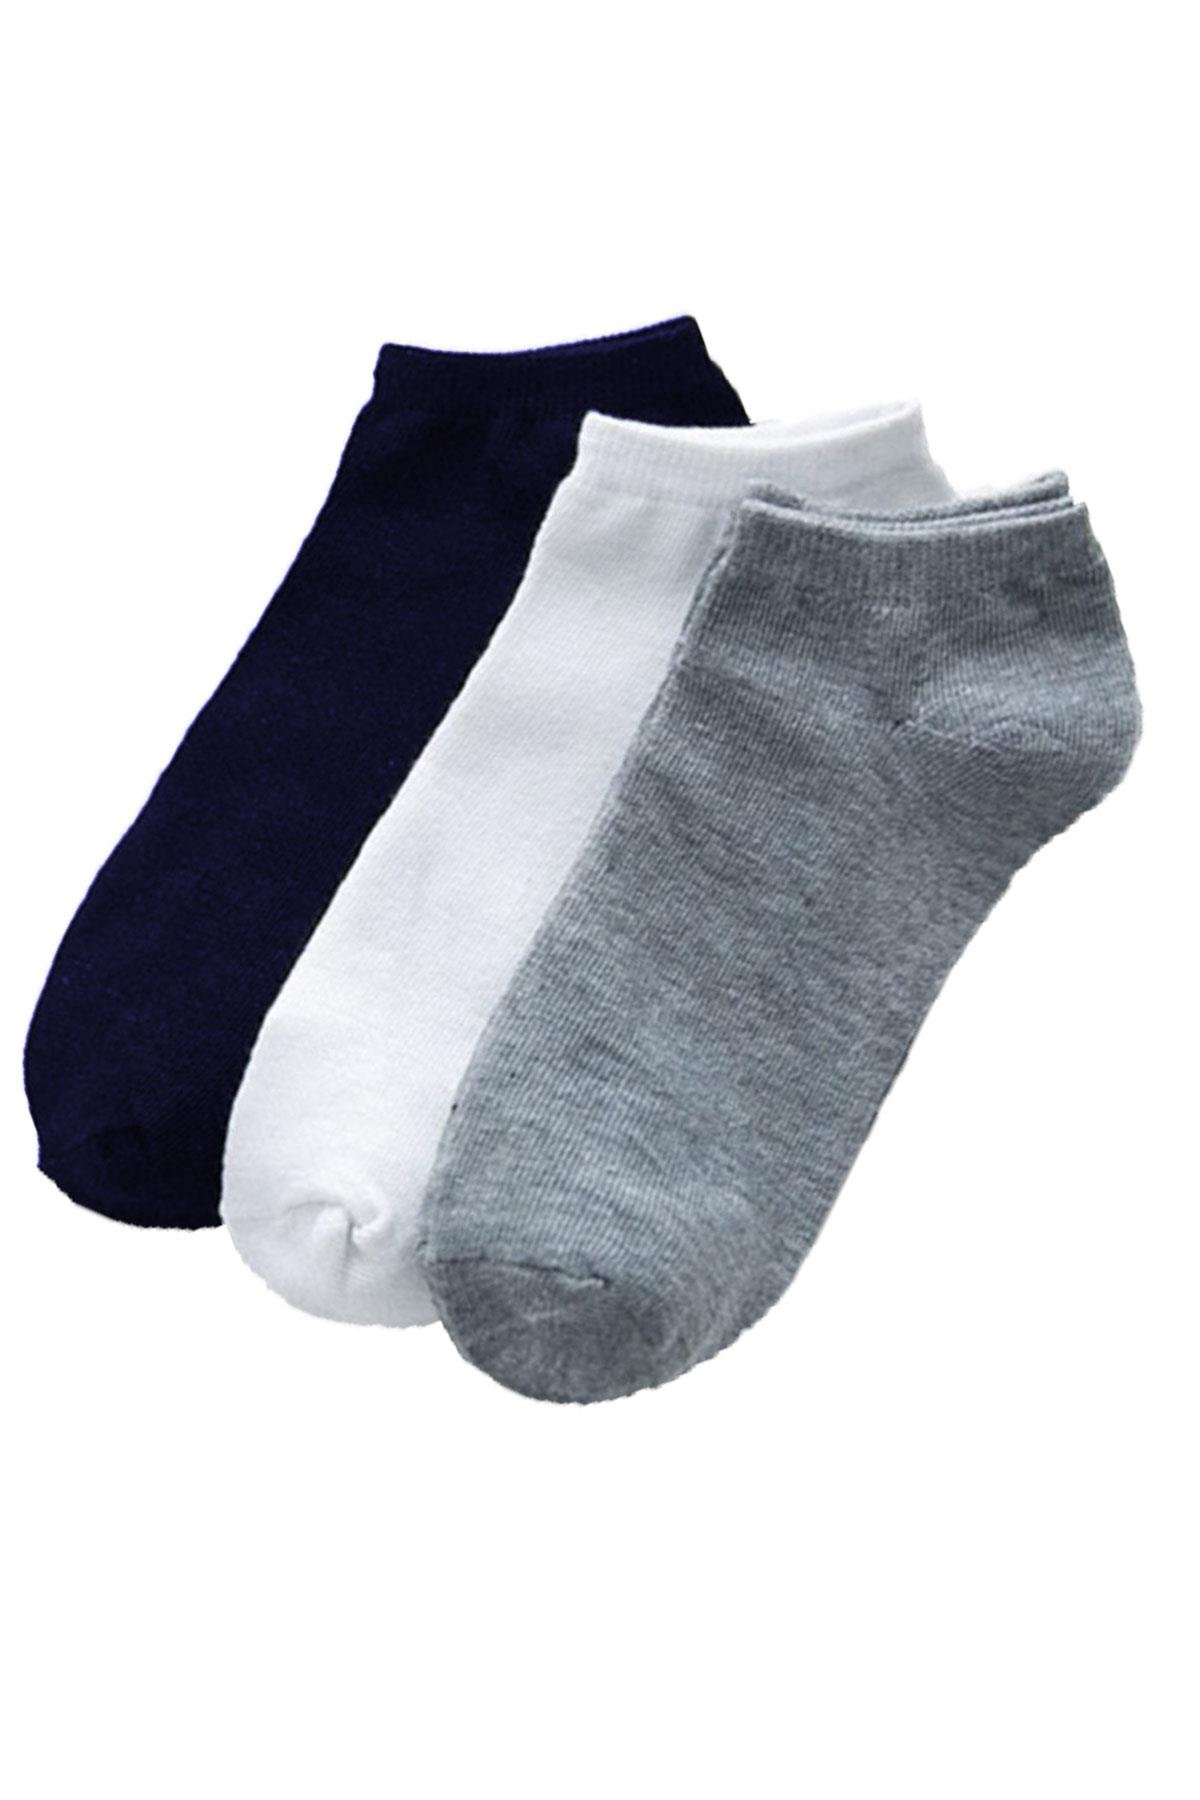 3lü Unisex Kısa Patik Çorap Ekonomik Pamuklu Spor Çorabı - Hepsine Rakip